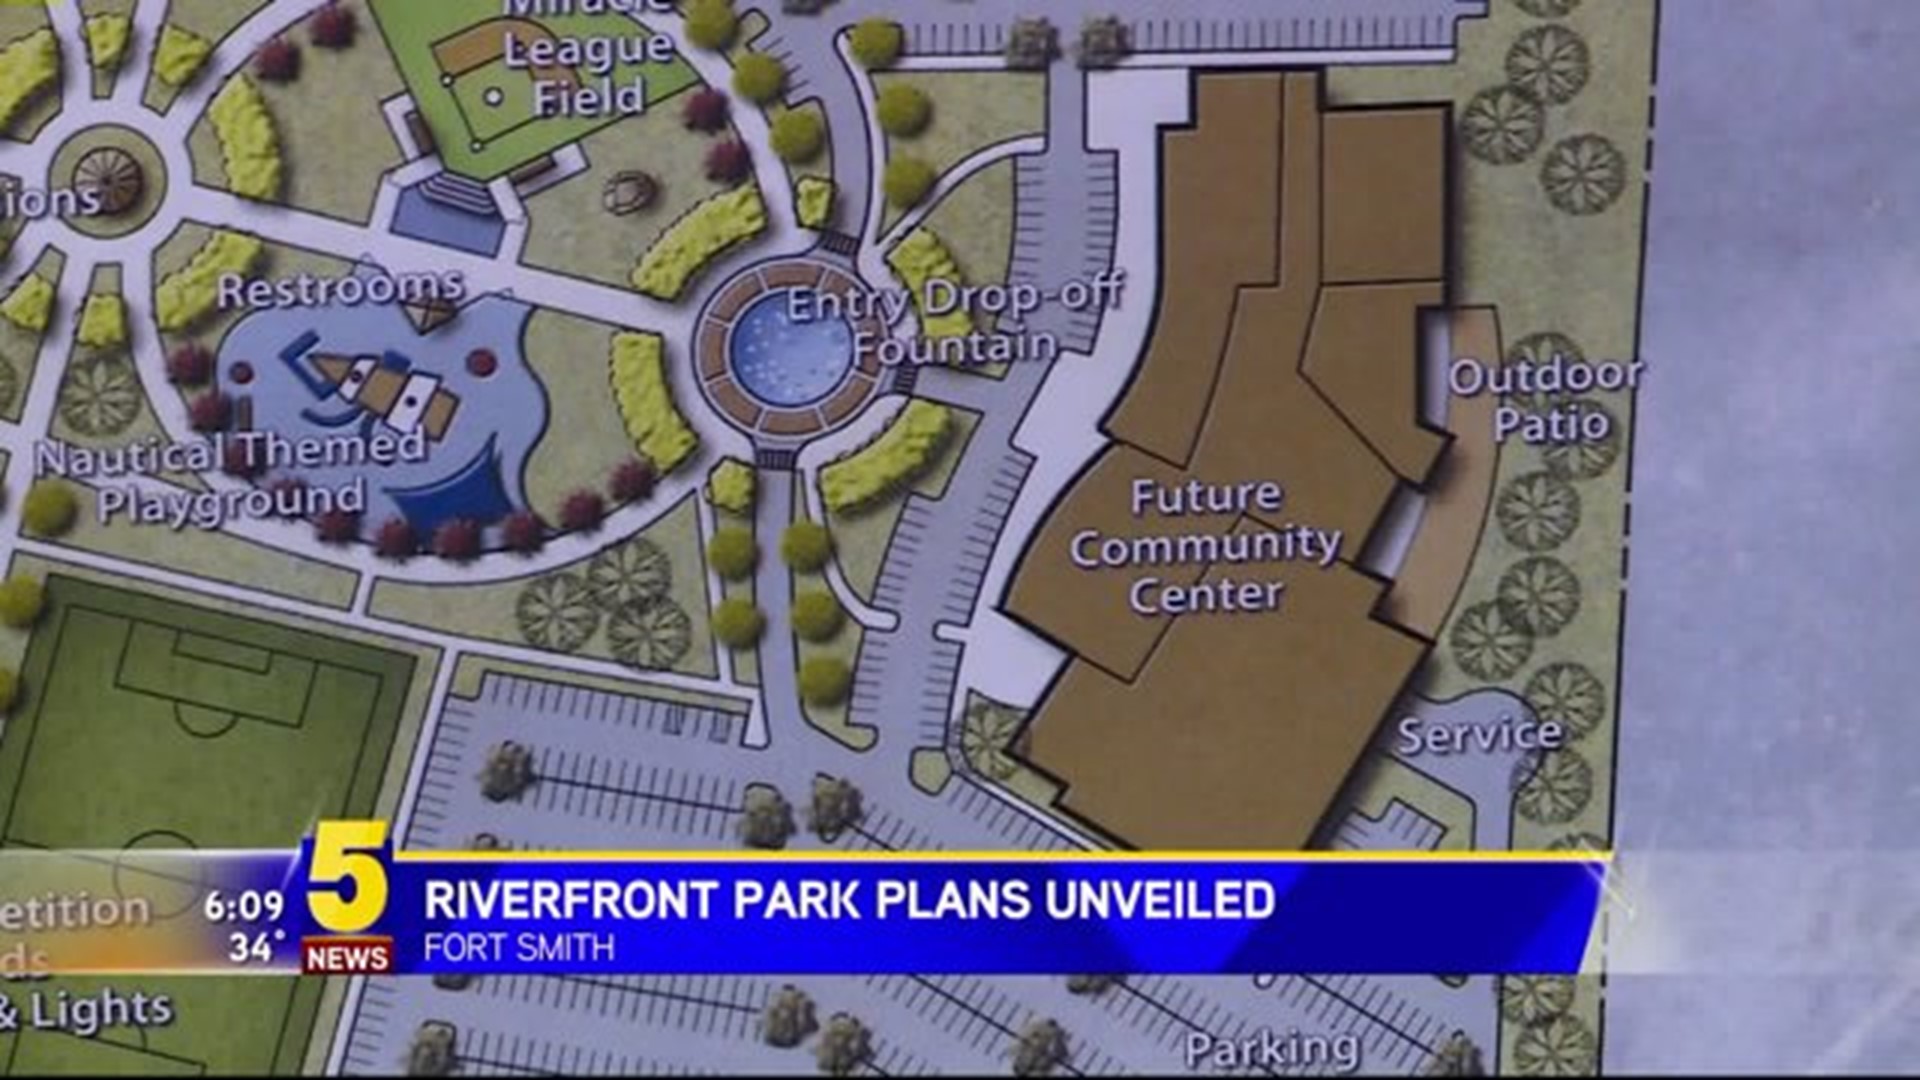 Riverfront Park Plans Unveiled